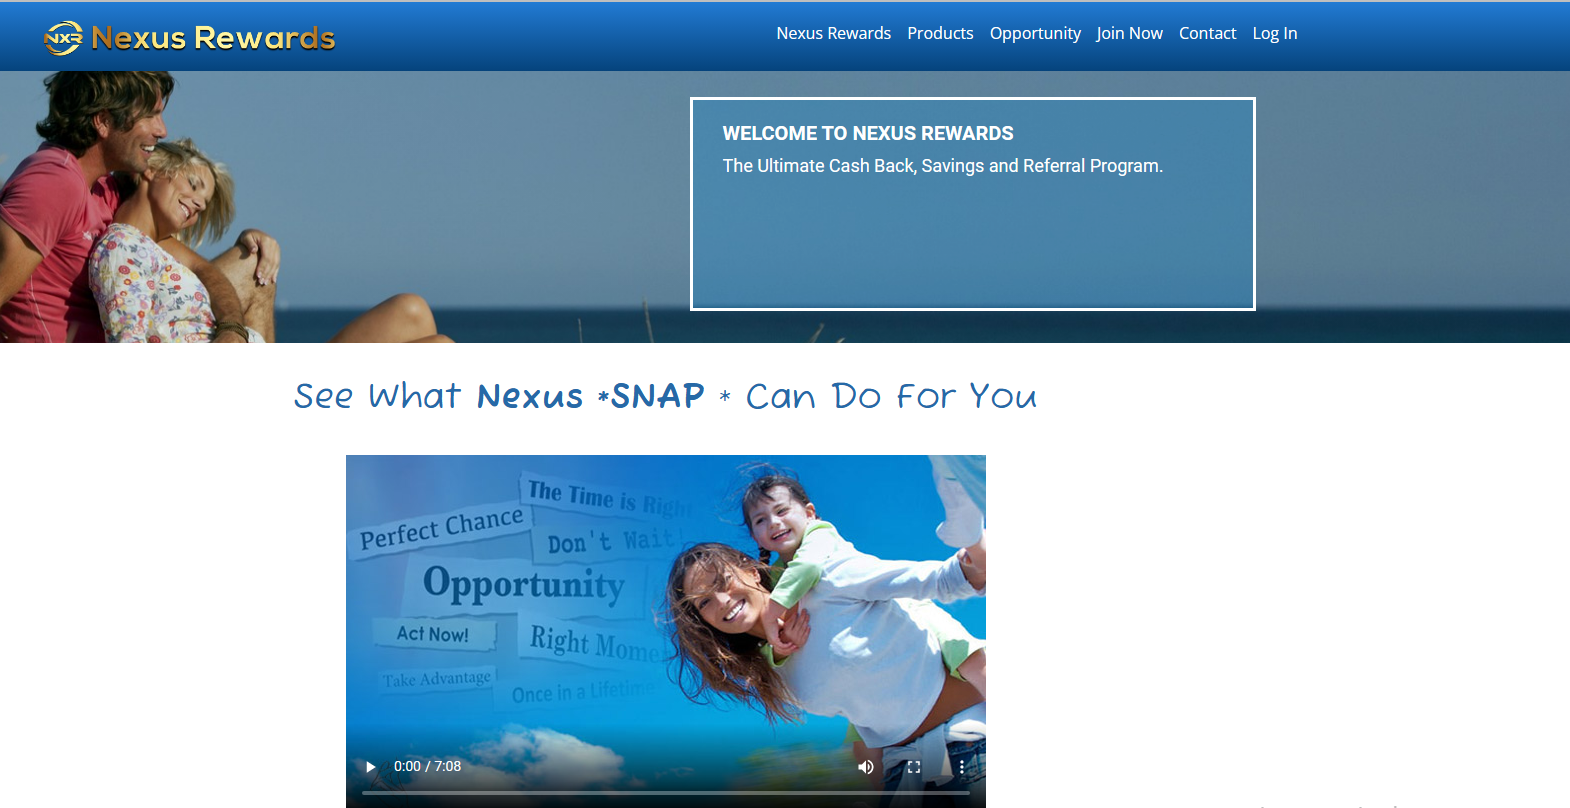 Homepage of Nexus Rewards